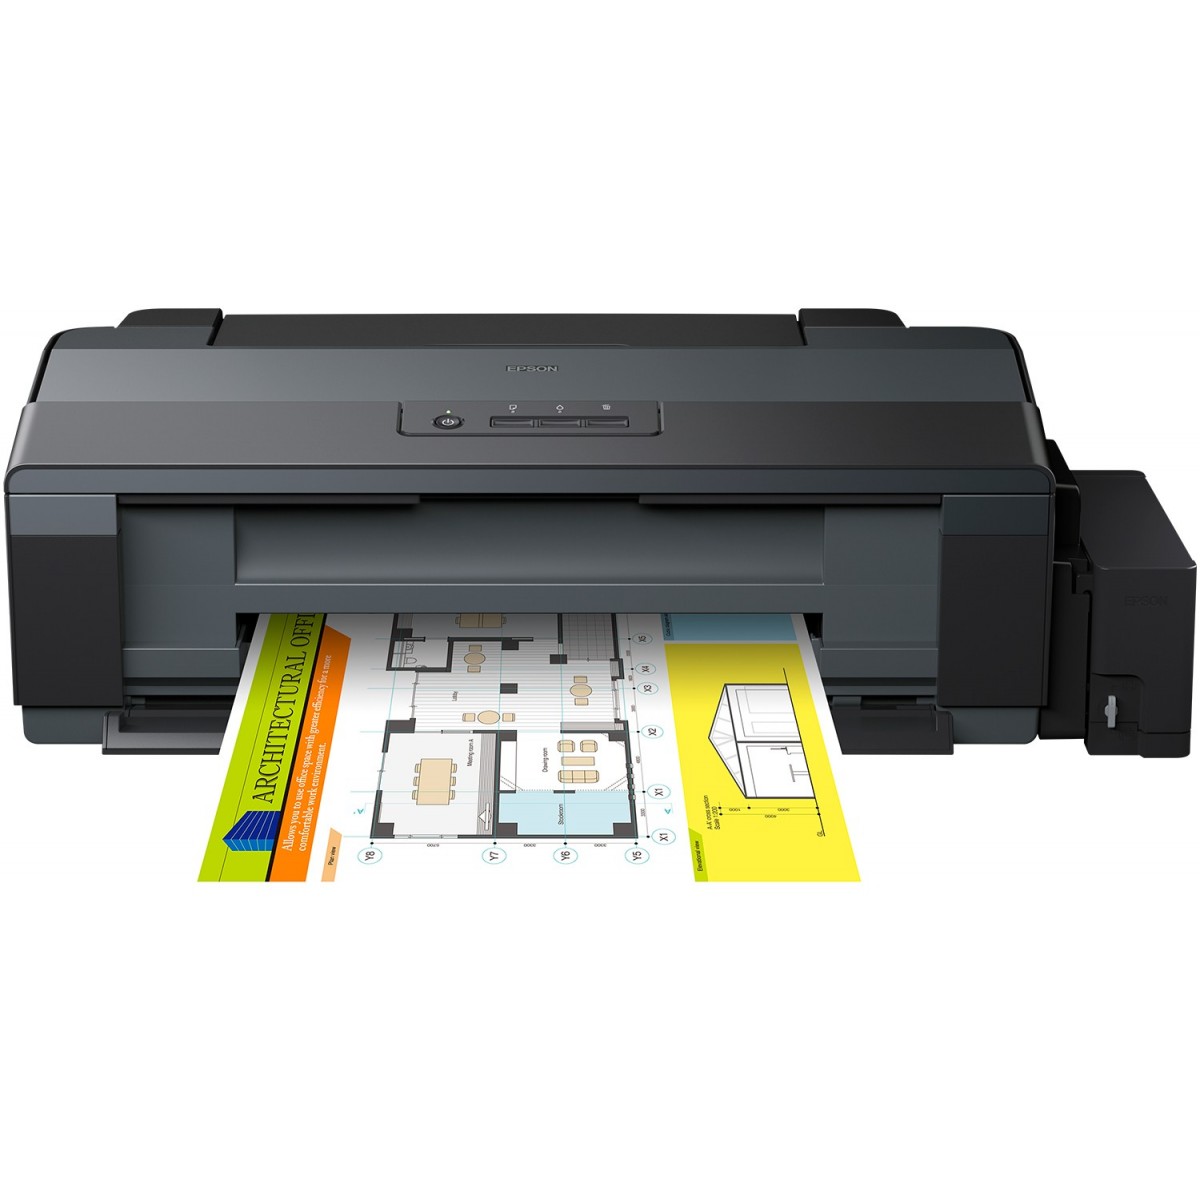 Epson AcuLaser EcoTank ET-14000 - Printer b/w Inkjet - 1,440 dpi - 30 ppm